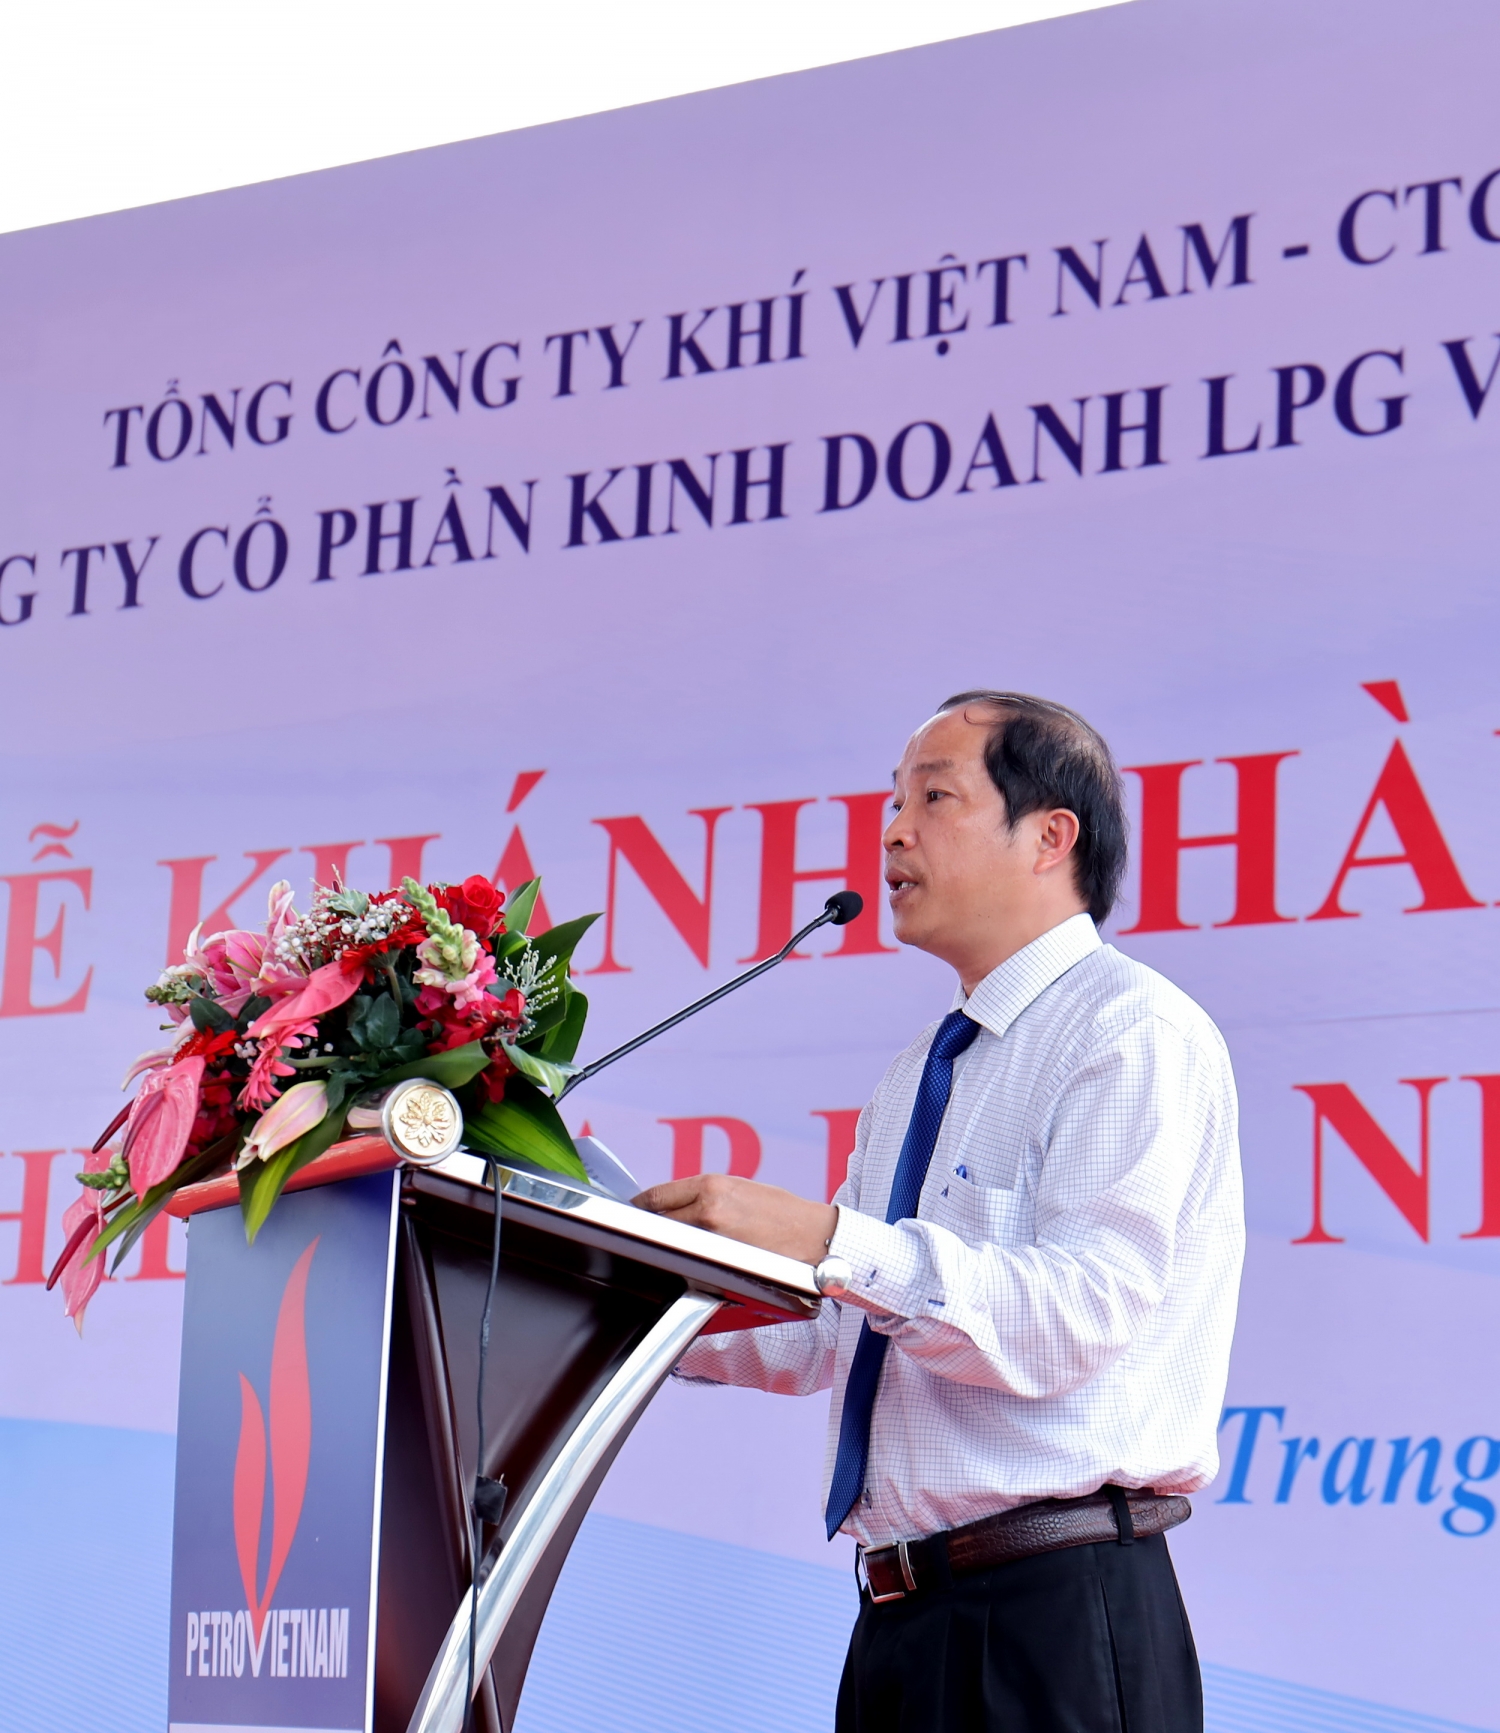 Ông Nguyễn Sanh Đương – Phó Giám đốc Sở Công Thương tỉnh Khánh Hòa cam kết tạo điều kiện thuận lợi để PV GAS LPG hoạt động đạt hiệu quả cao trên địa bàn